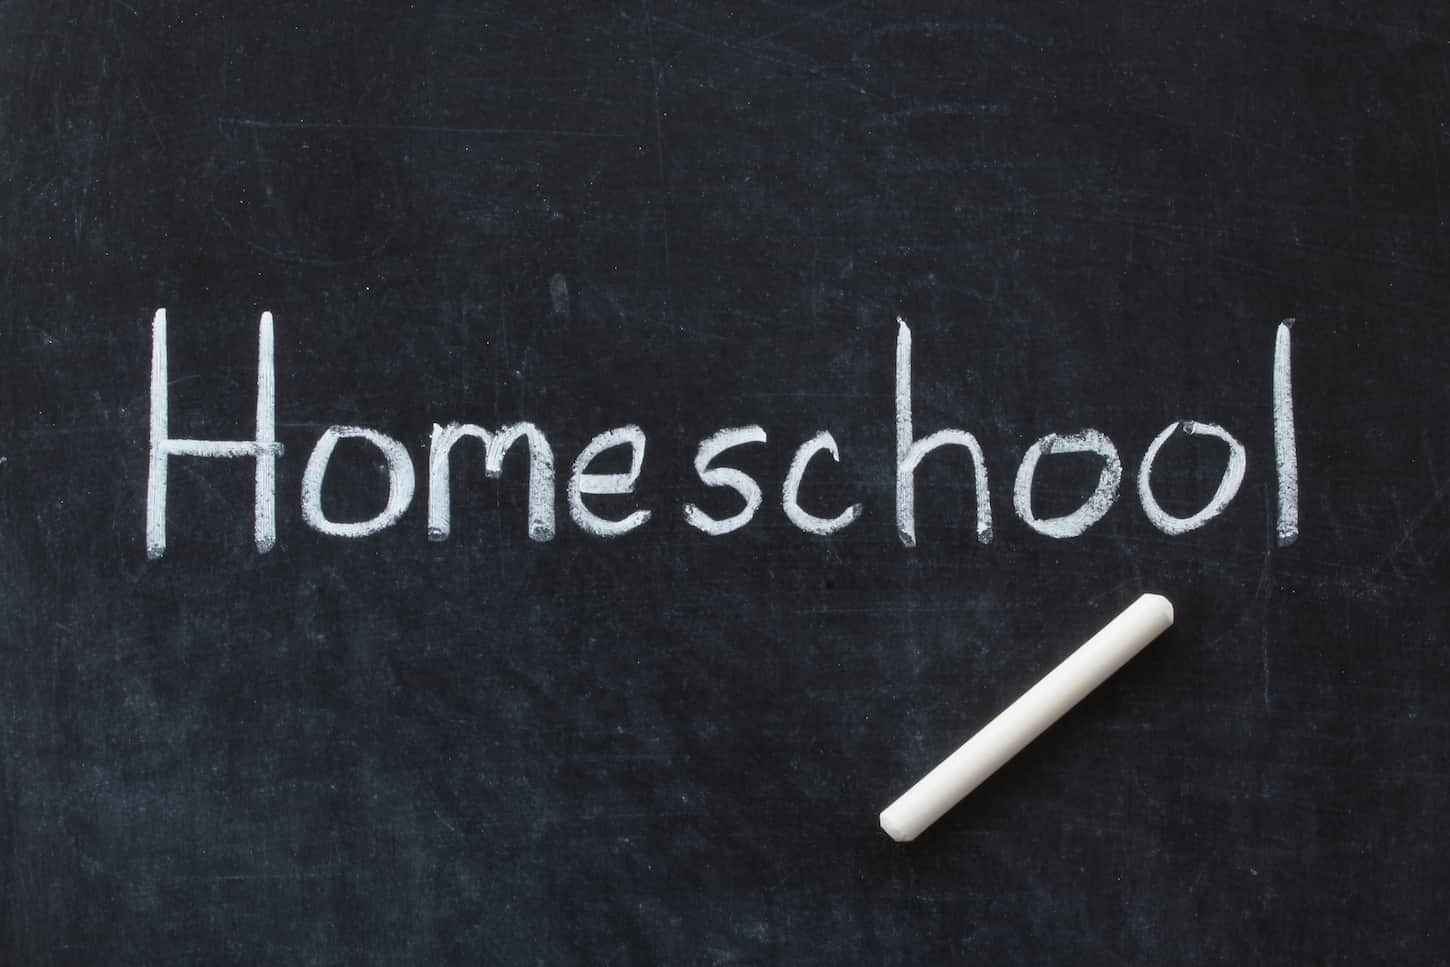 Homeschool Written On Chalkboard 2022 08 01 03 01 46 Utc 1 